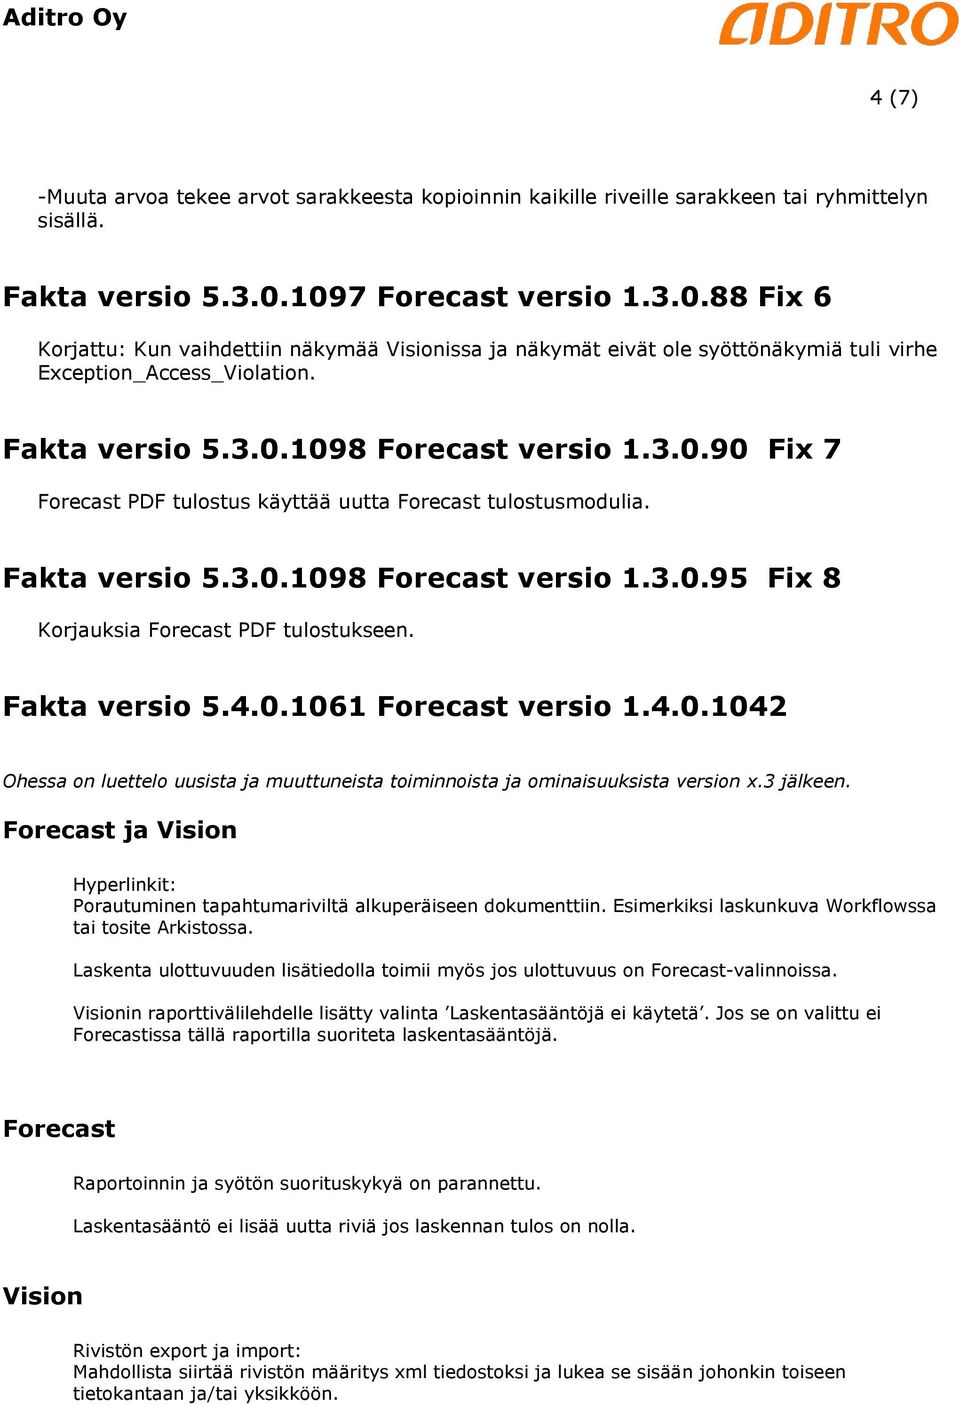 Fakta versio 5.3.0.1098 versio 1.3.0.95 Fix 8 Korjauksia PDF tulostukseen. Fakta versio 5.4.0.1061 versio 1.4.0.1042 Ohessa on luettelo uusista ja muuttuneista toiminnoista ja ominaisuuksista version x.